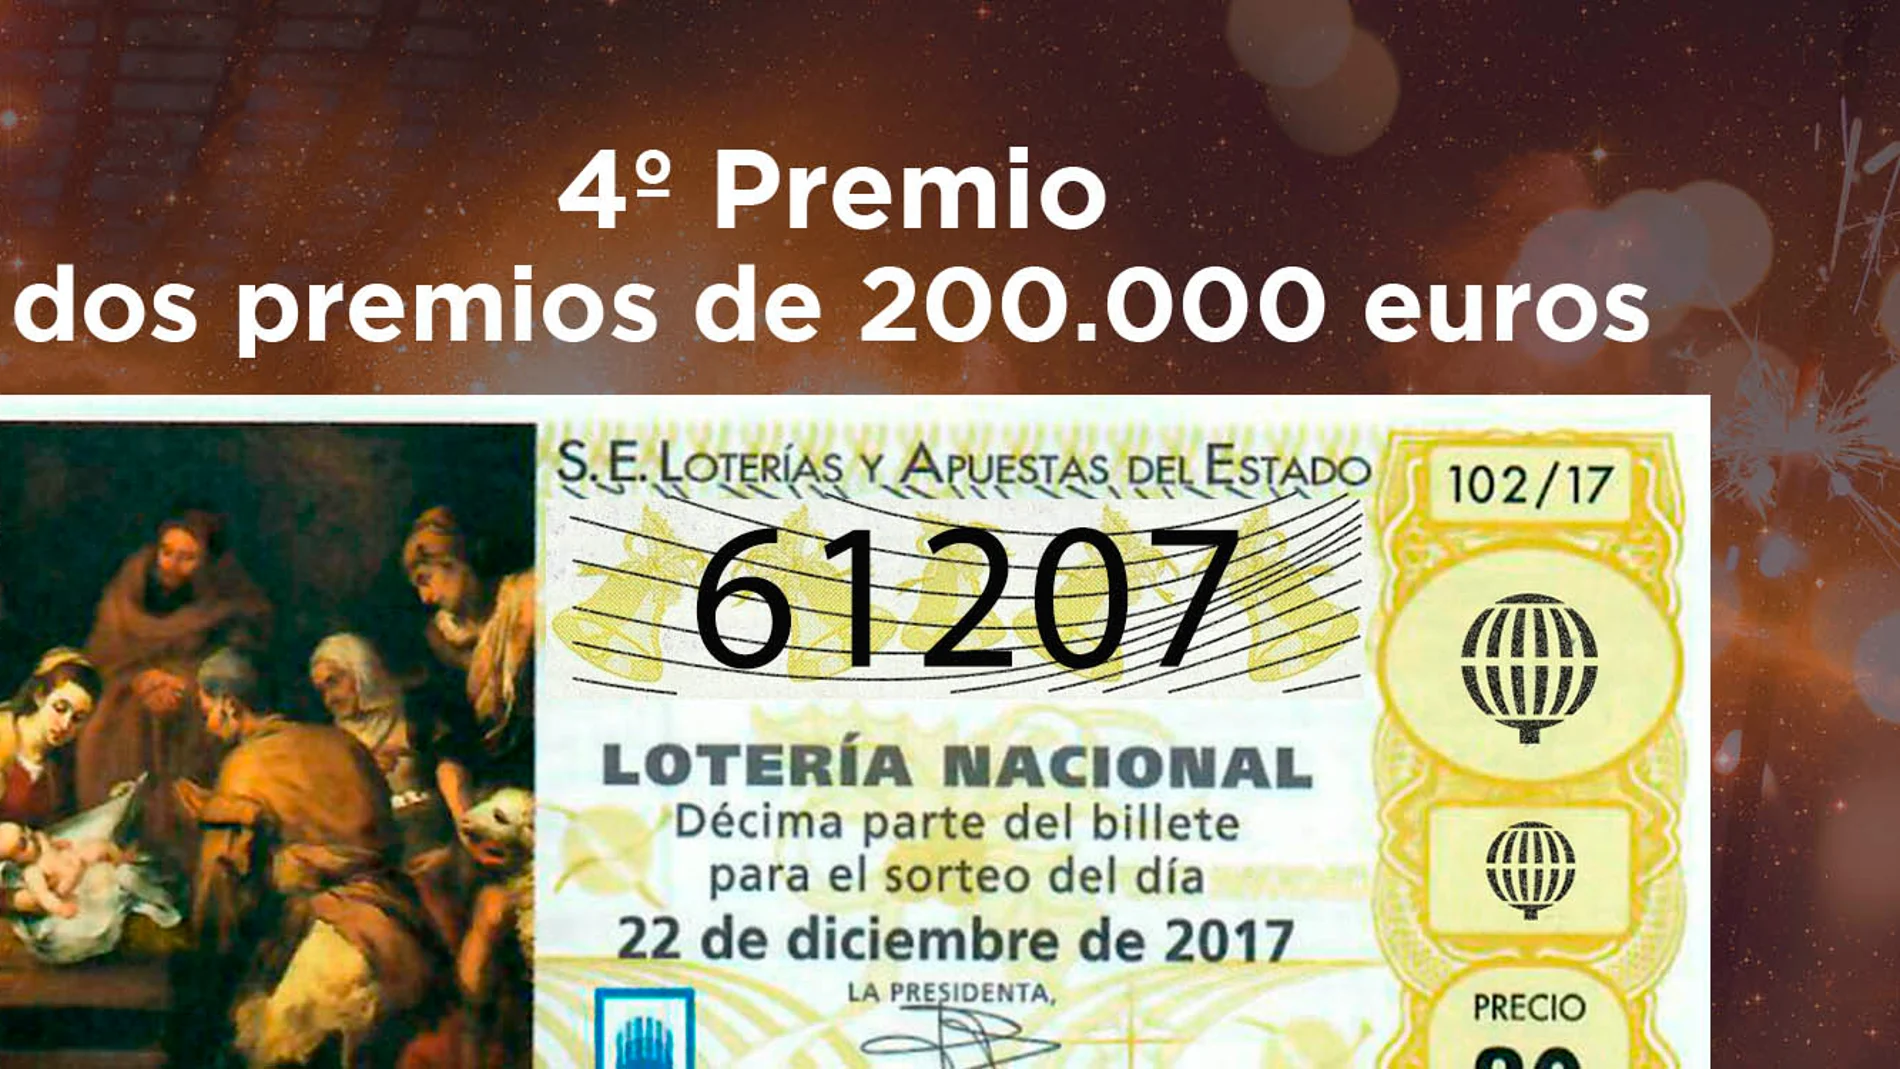 61207, segundo cuarto premio del Sorteo de Lotería de Navidad